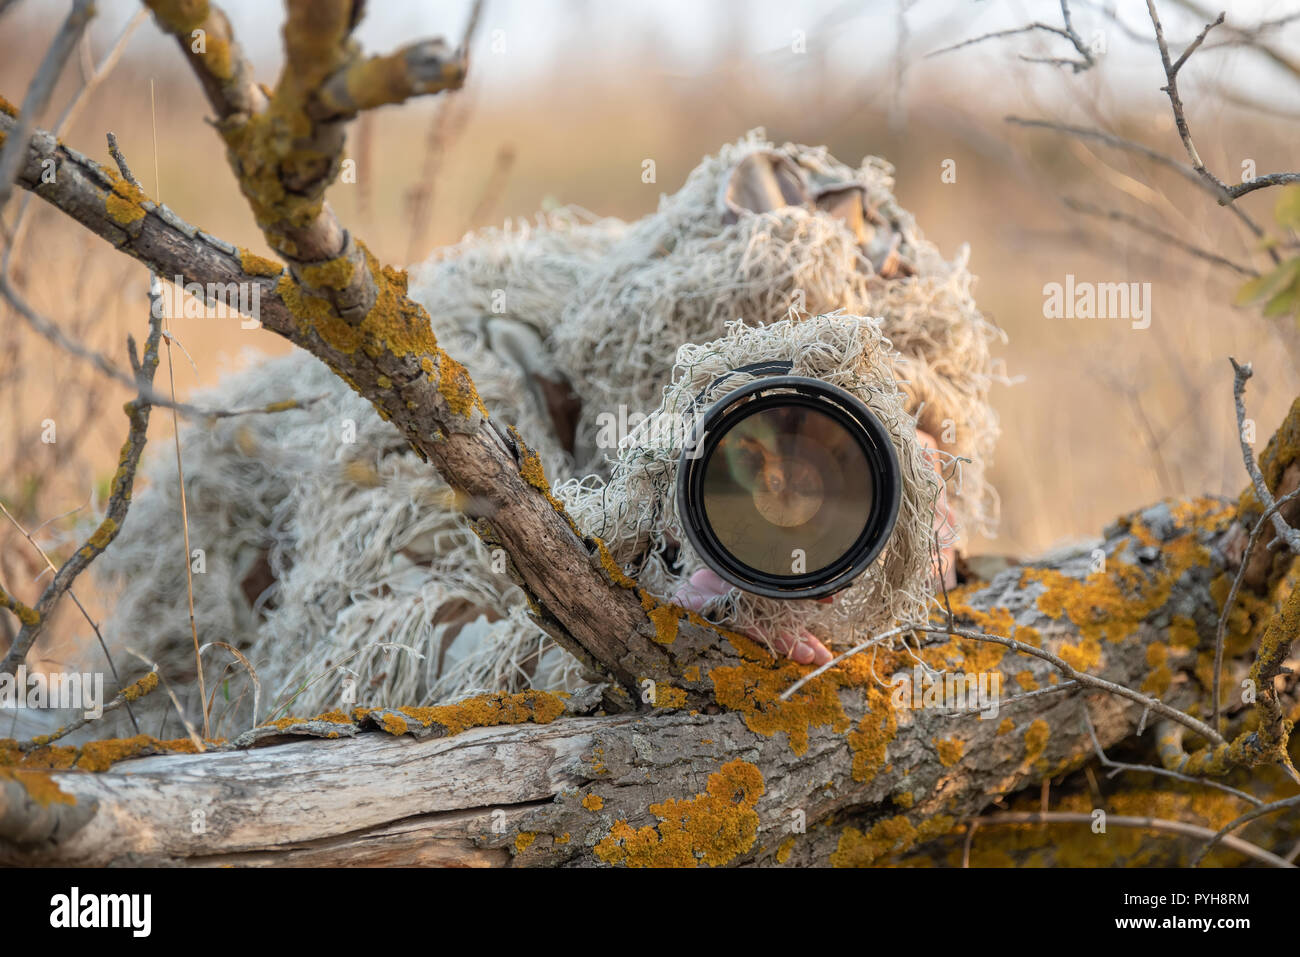 Photographe de la faune dans le camouflage ghillie suit working in the wild Banque D'Images